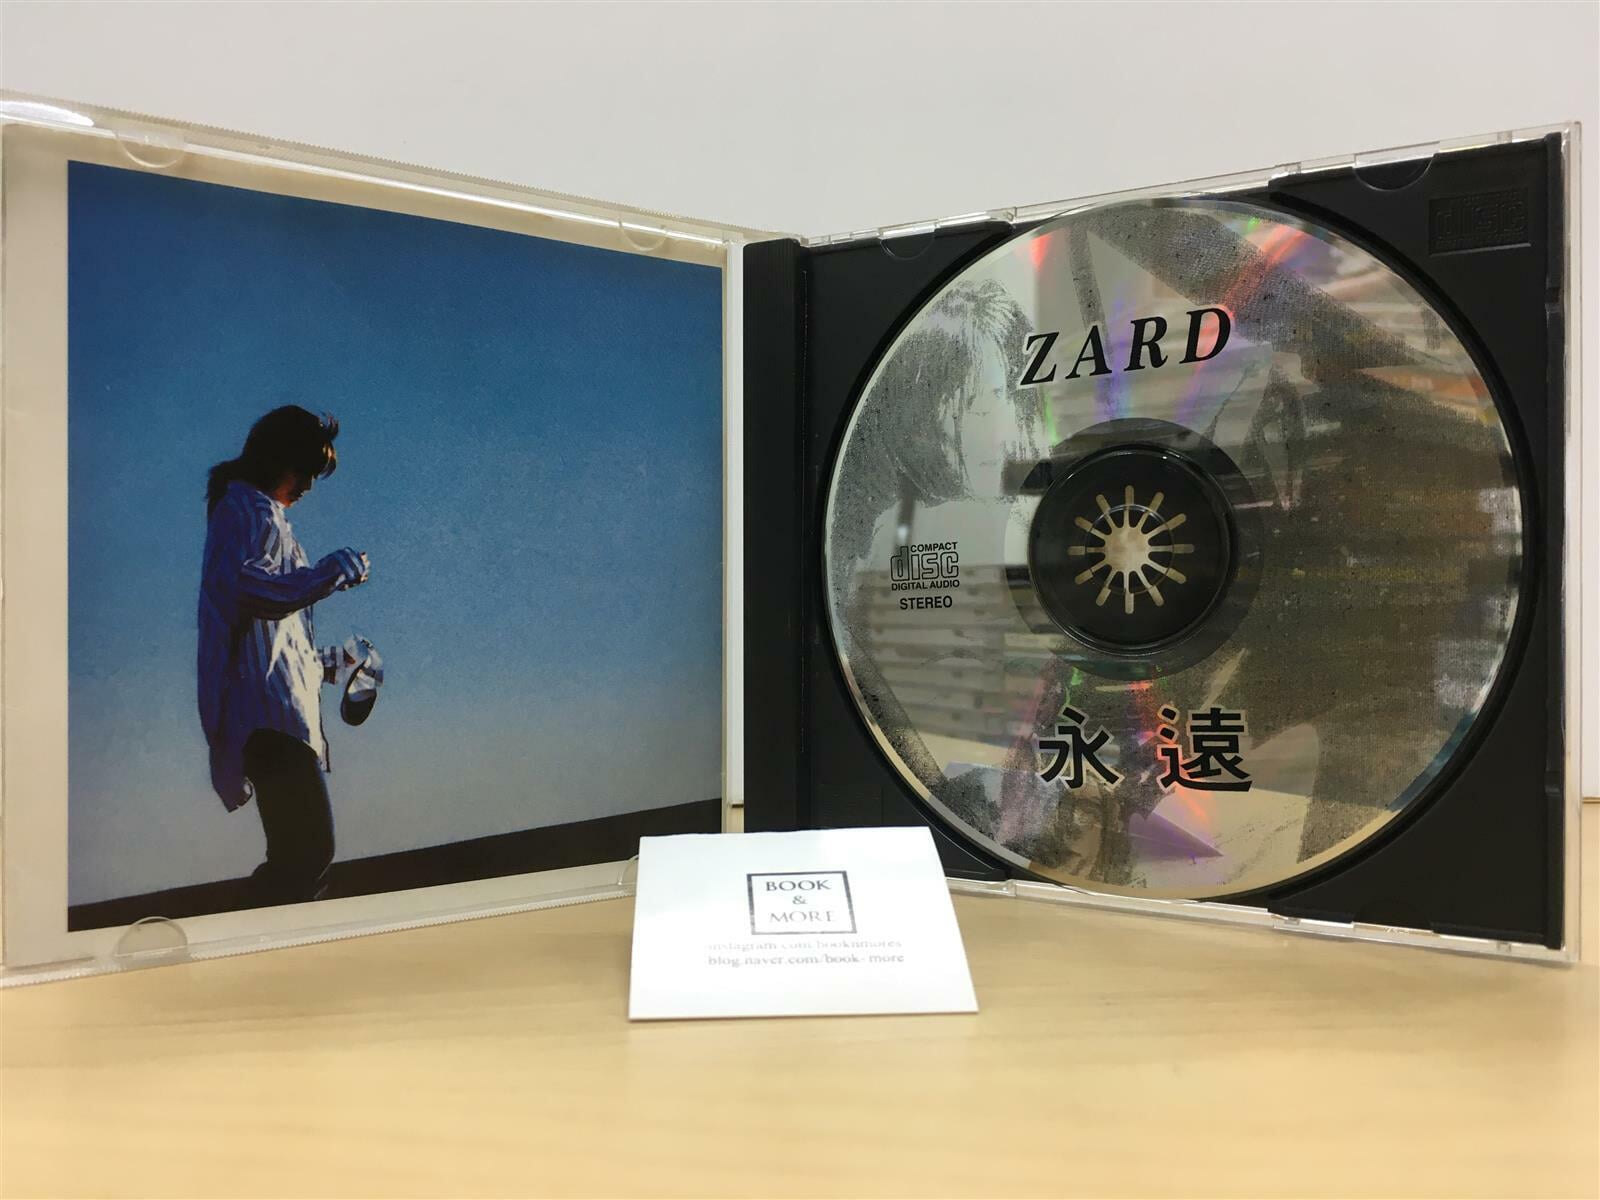 [CD 일본] Zard - 영원 (永遠) / KI TEN MEDIA / 상태 : 최상 (설명과 사진 참고)